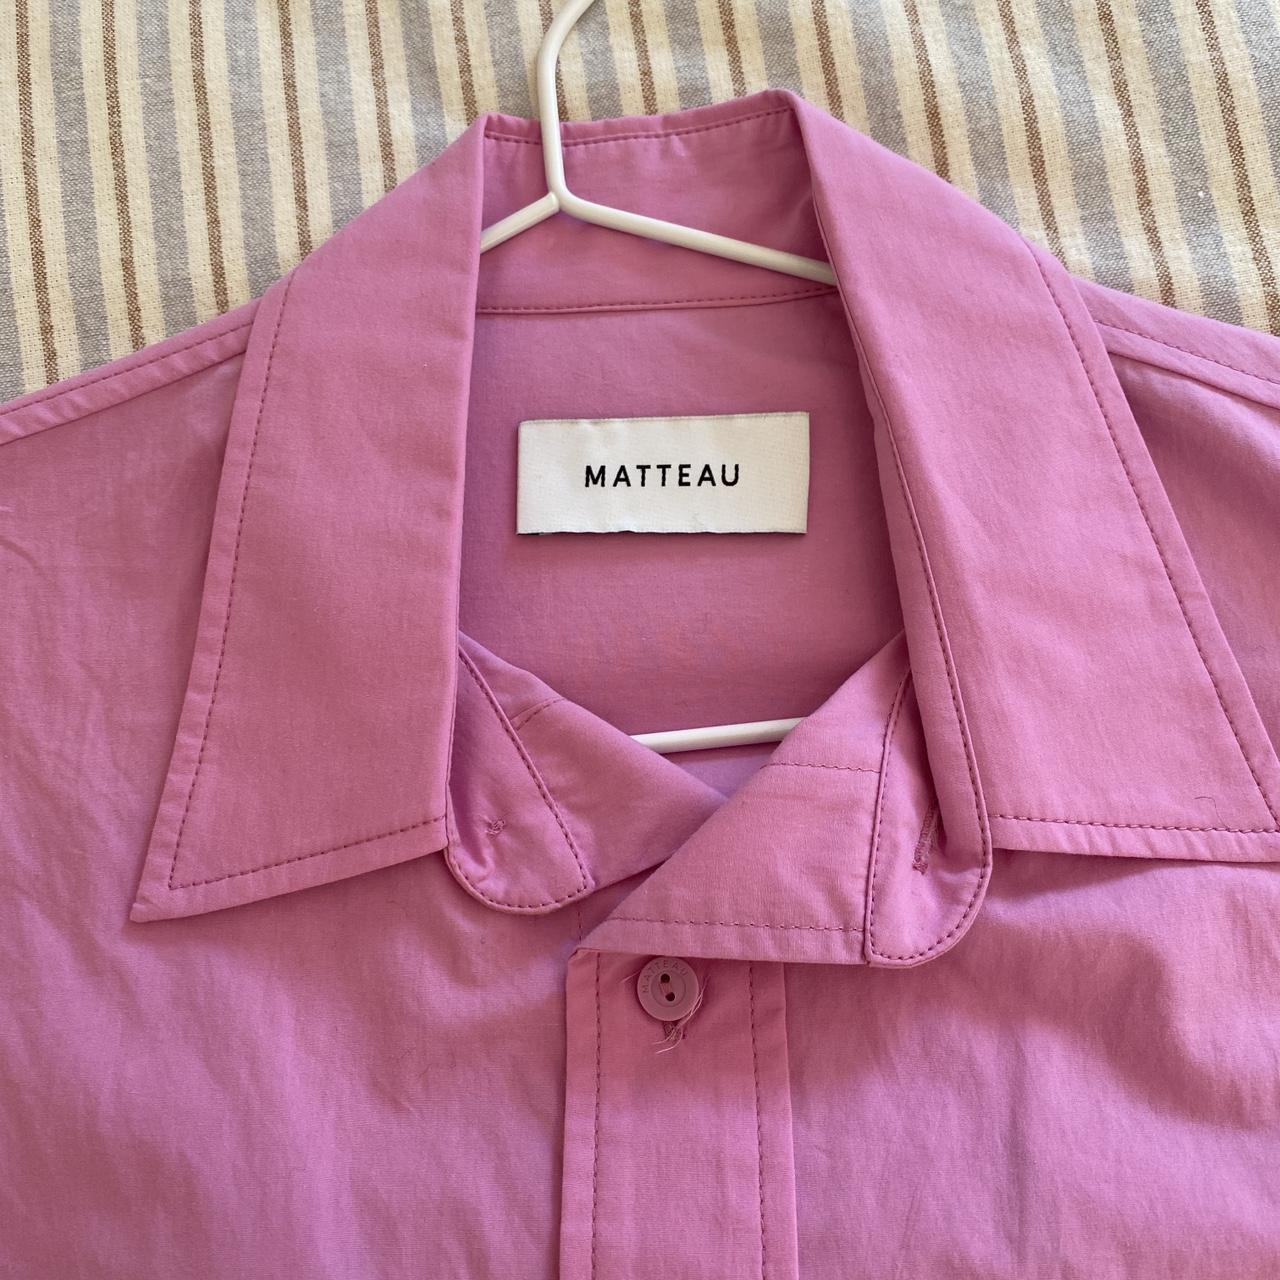 MATTEAU Relaxed Shirt Mauve (Pink), Size 2 100%... - Depop